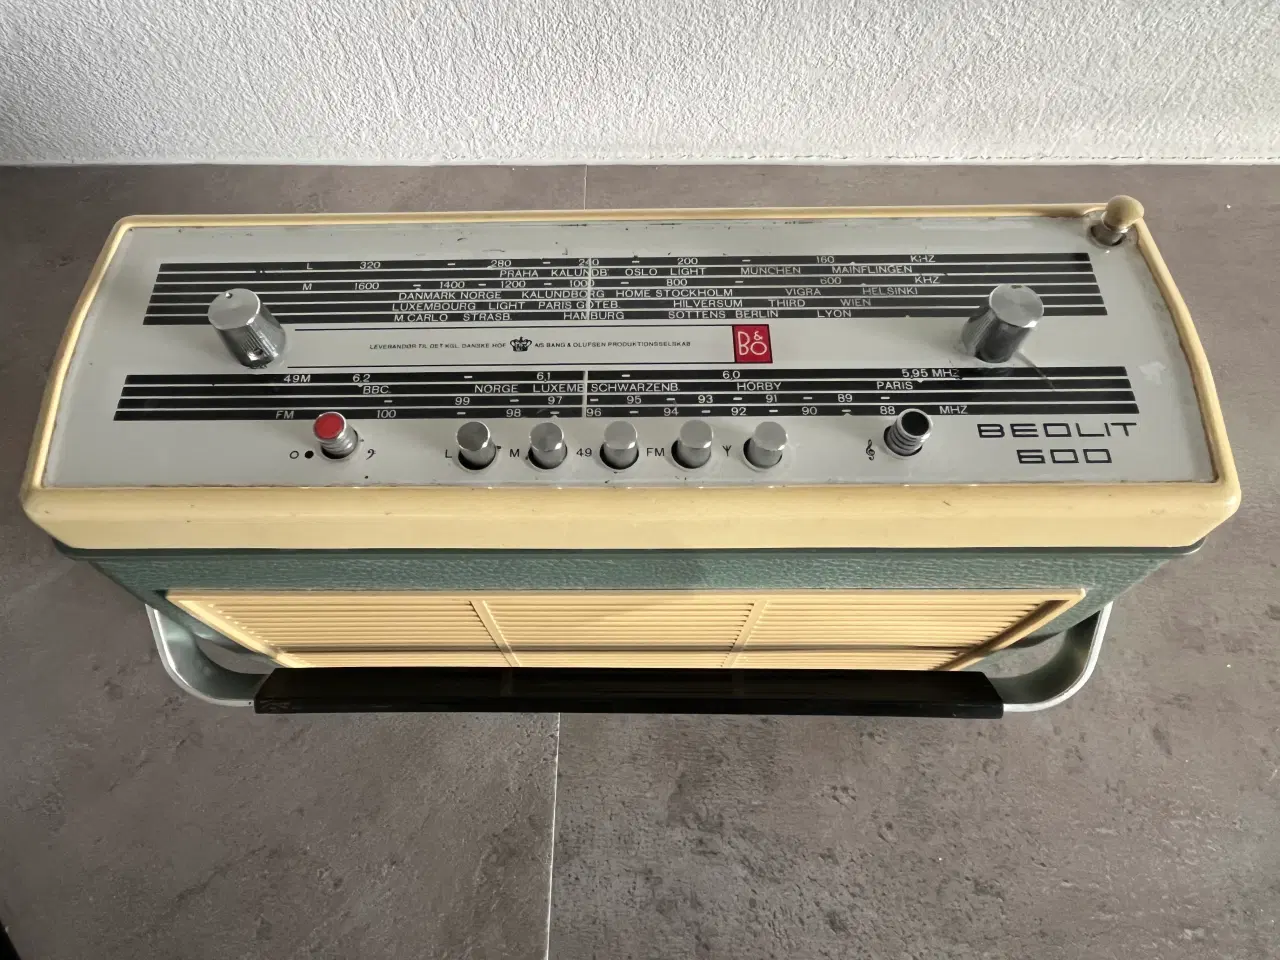 Billede 1 - Beolit 600 transistor radio sælges.